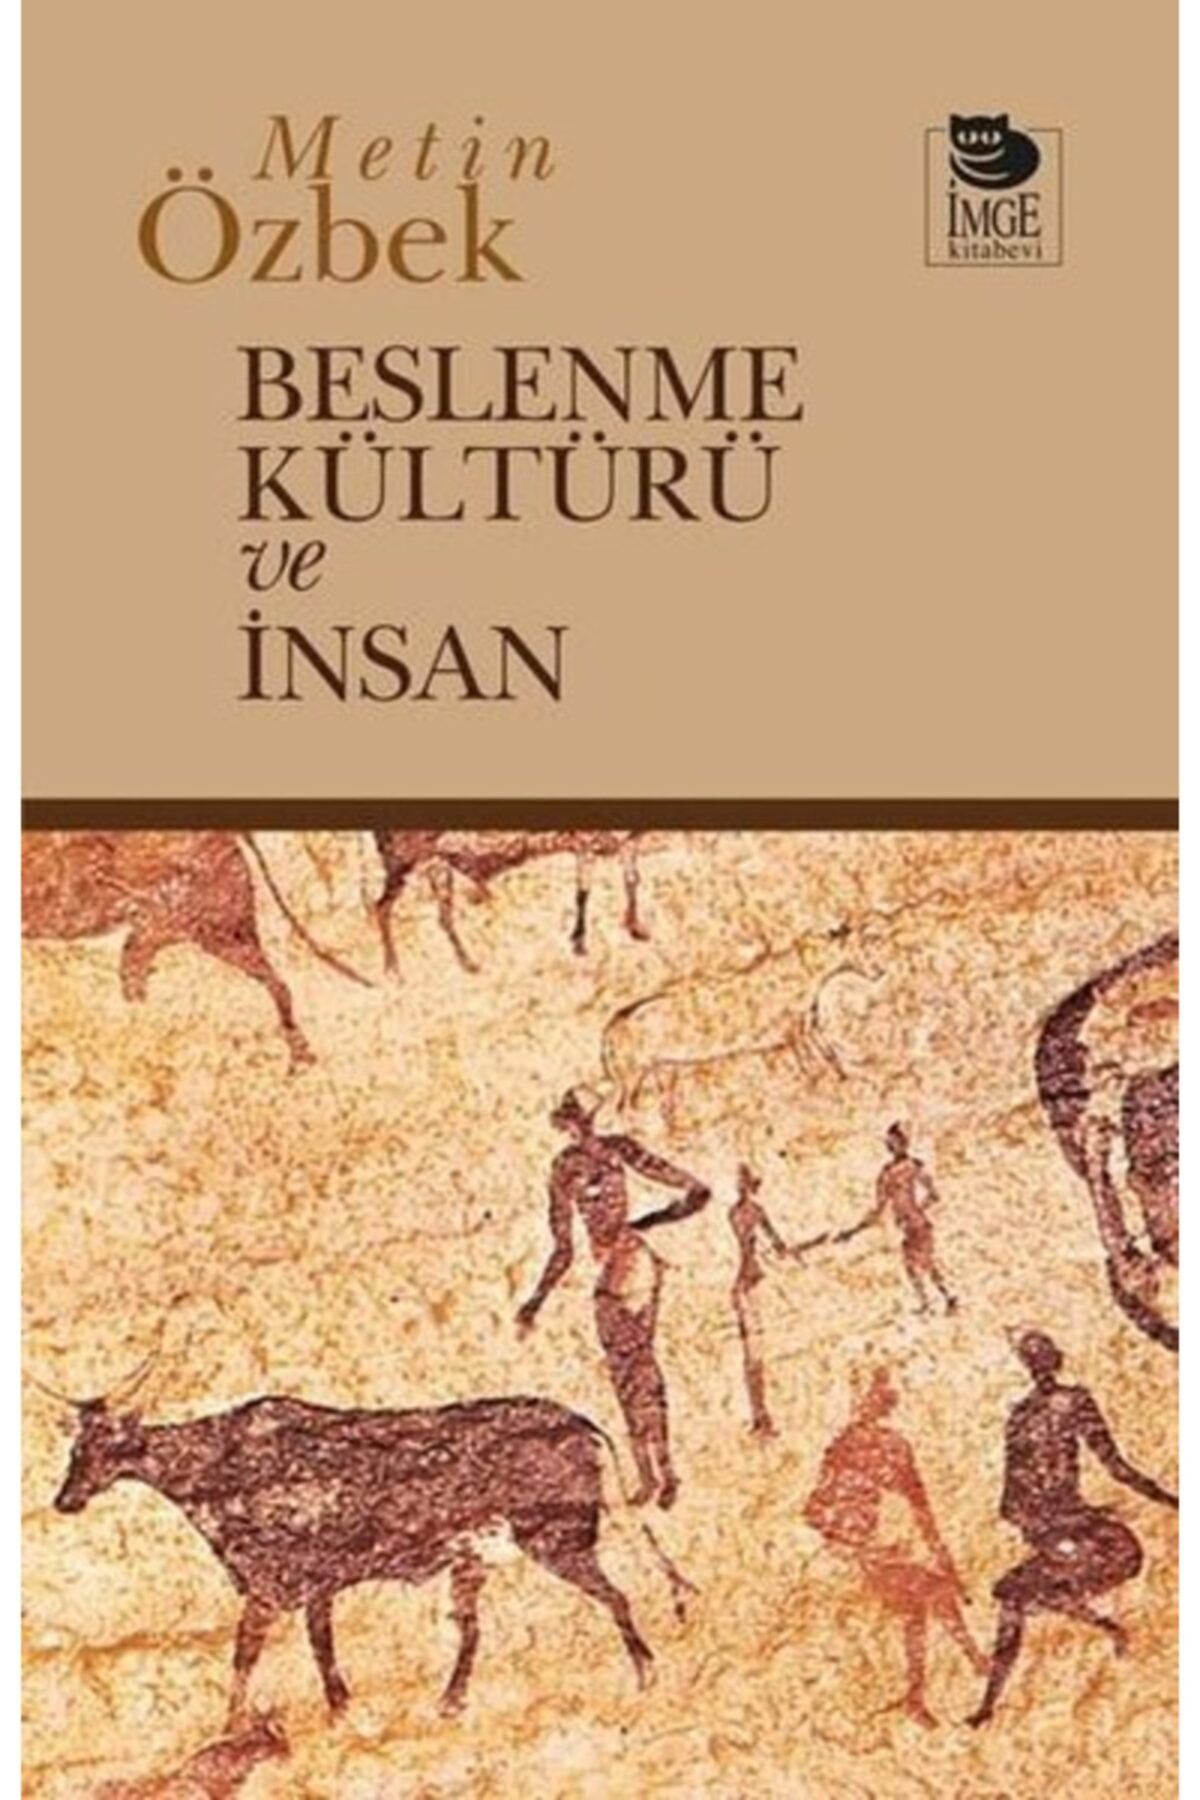 İmge Kitabevi Yayınları Beslenme Kültürü Ve Insan Metin Özbek